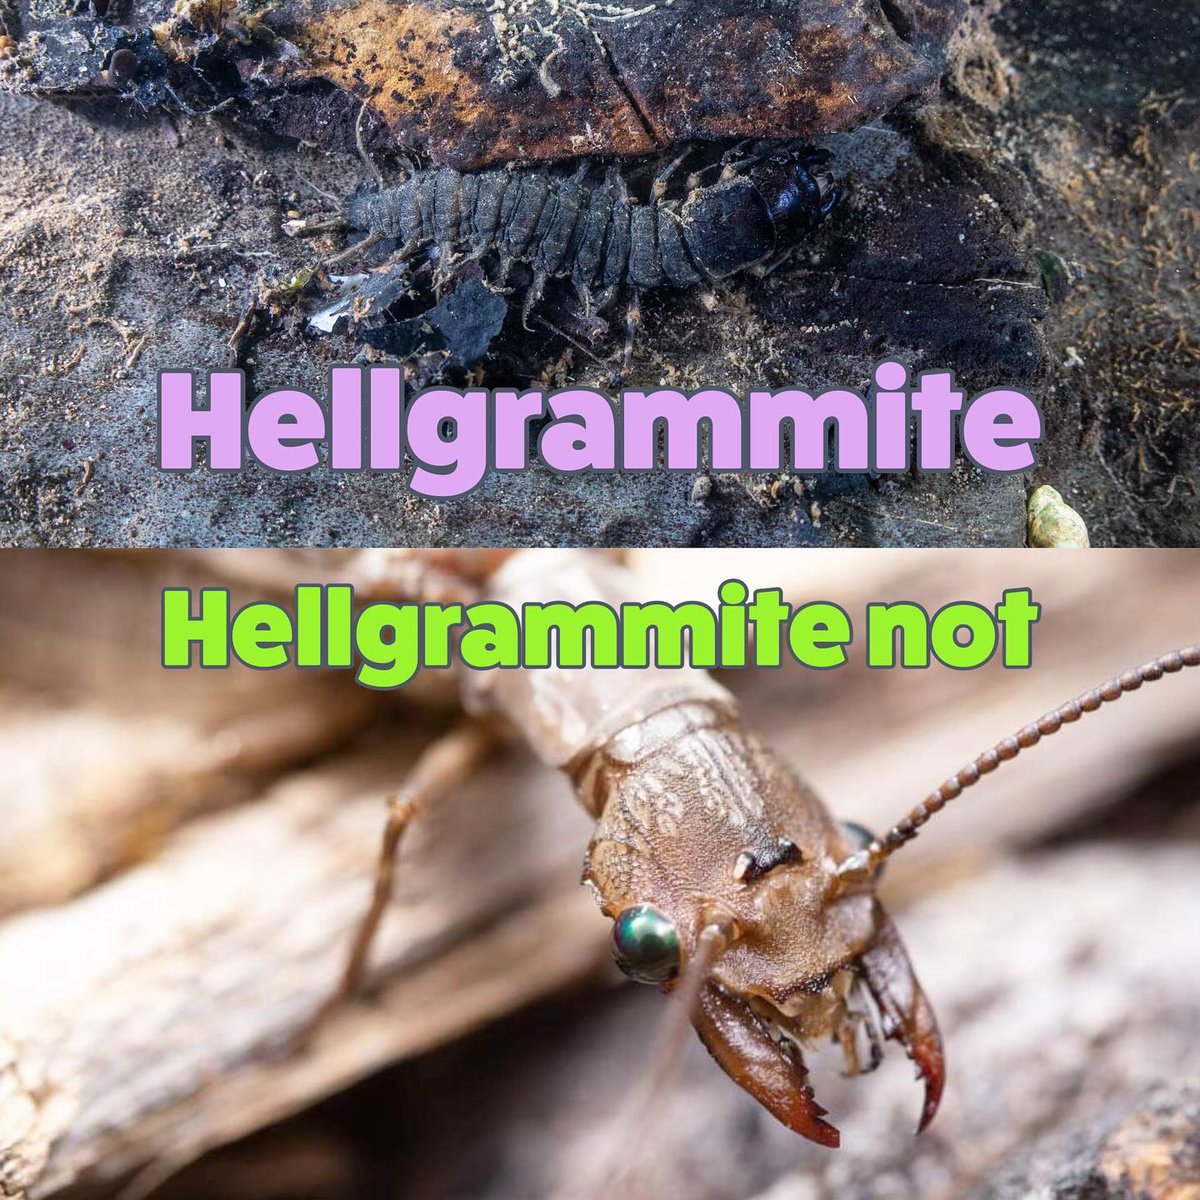 USFWS Fisheries on X: Hellgrammite. Hellgrammite not